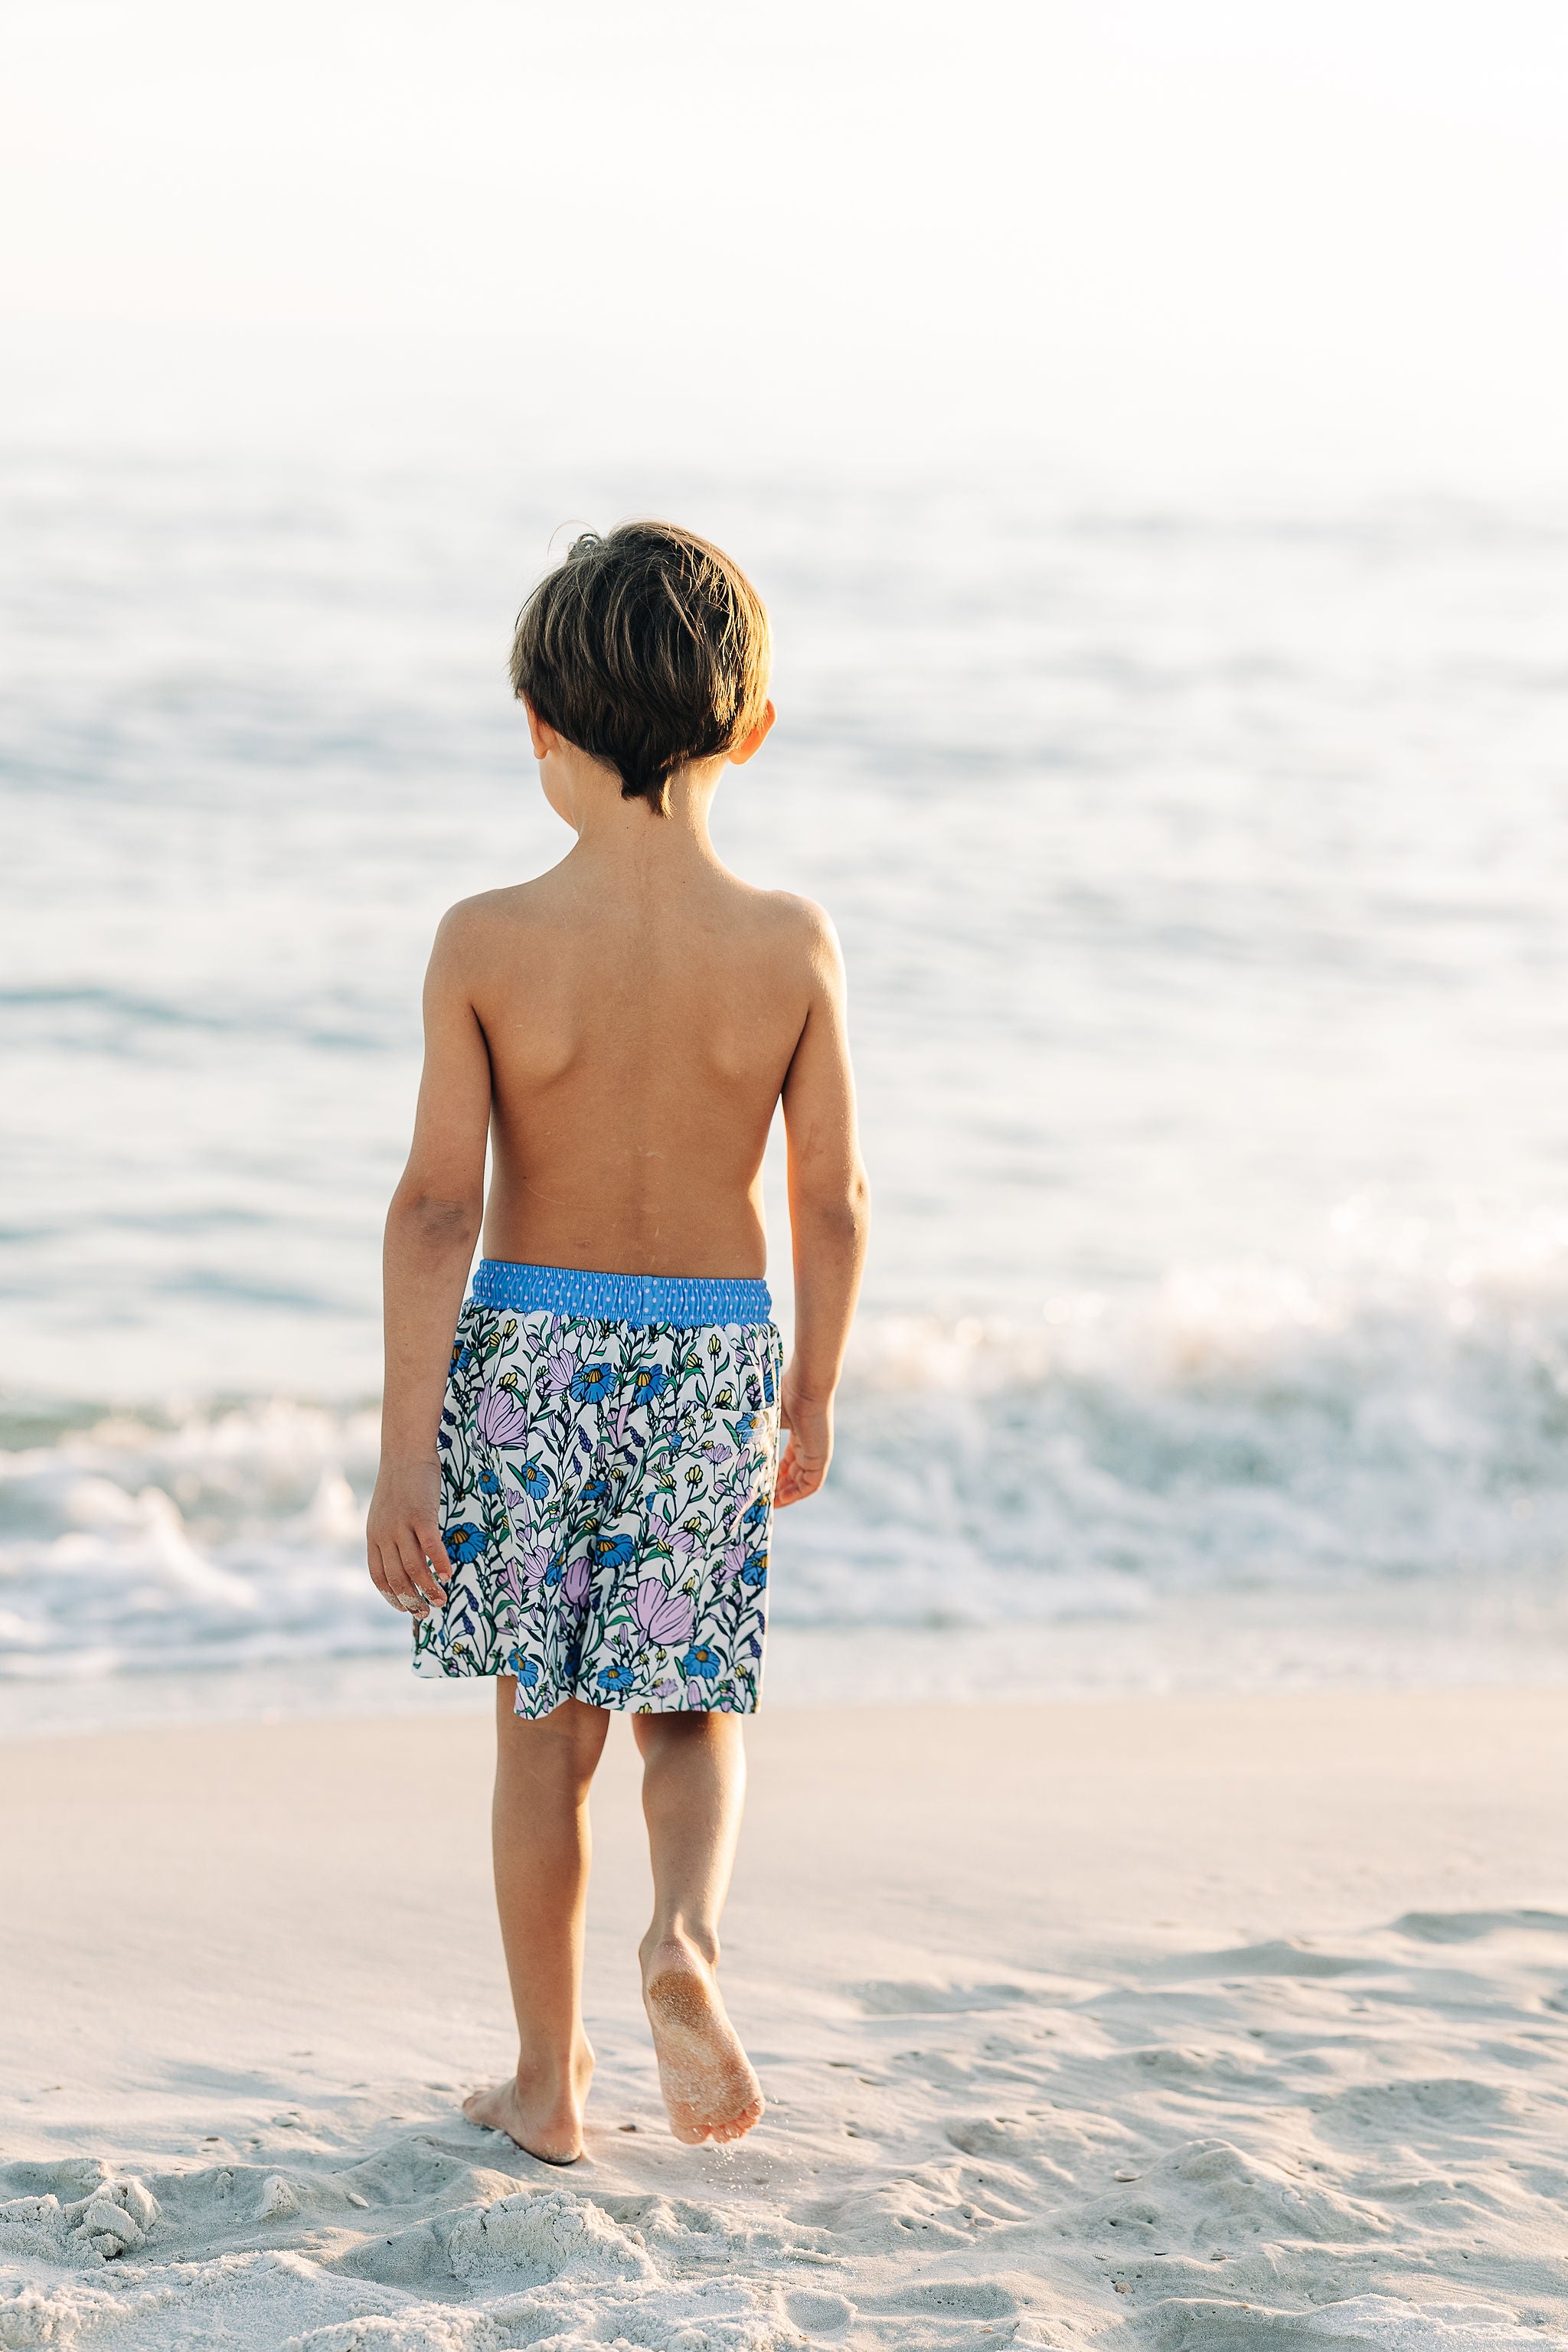 Sandcastle Shores Boy's Swim Trunks